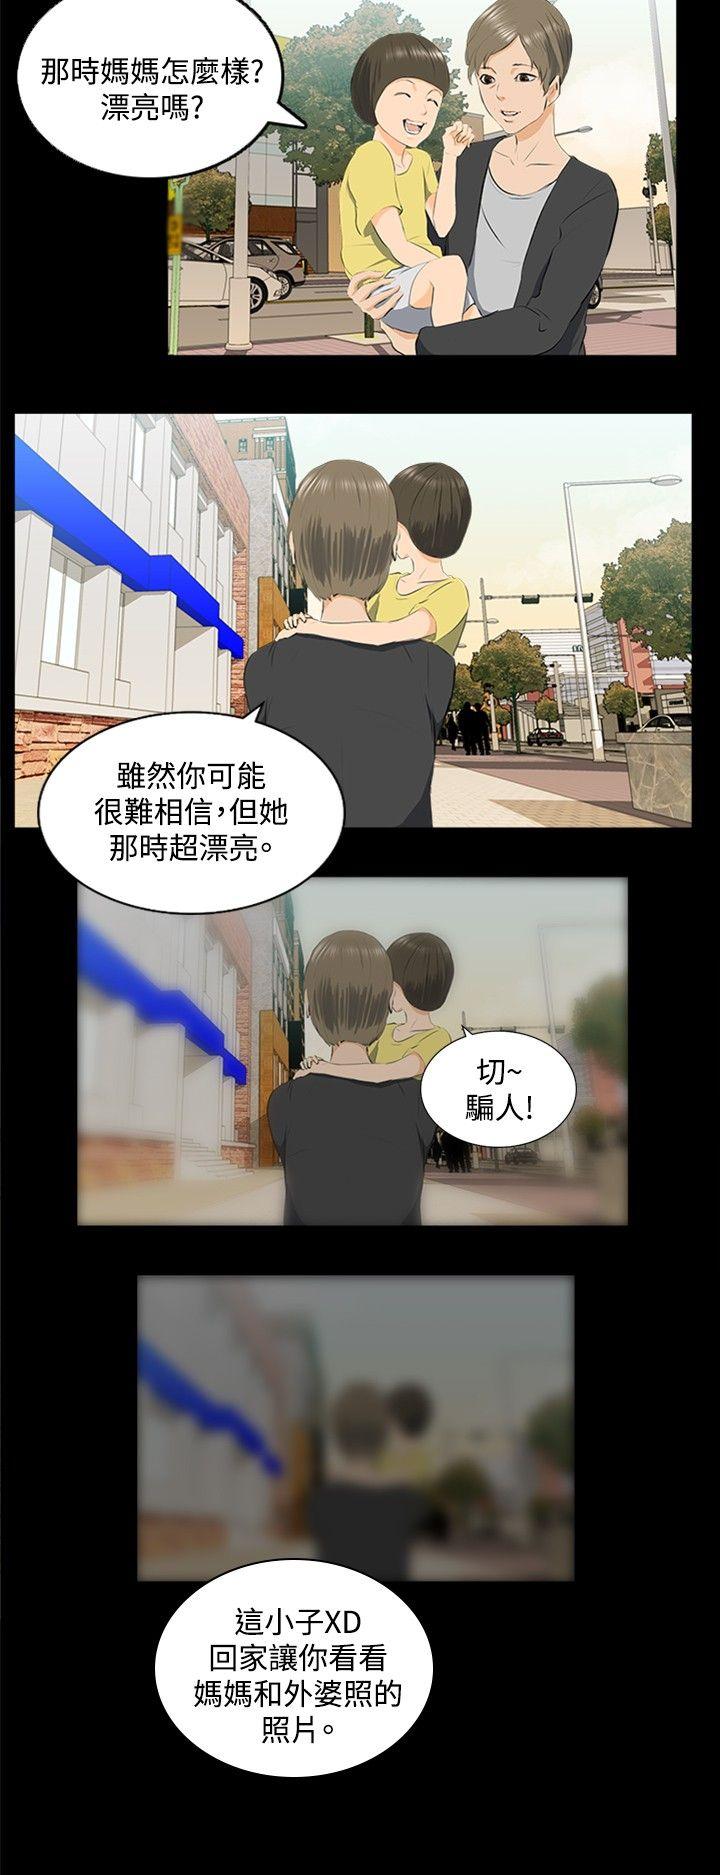 秘密Story  邪教之女(下) 漫画图片9.jpg